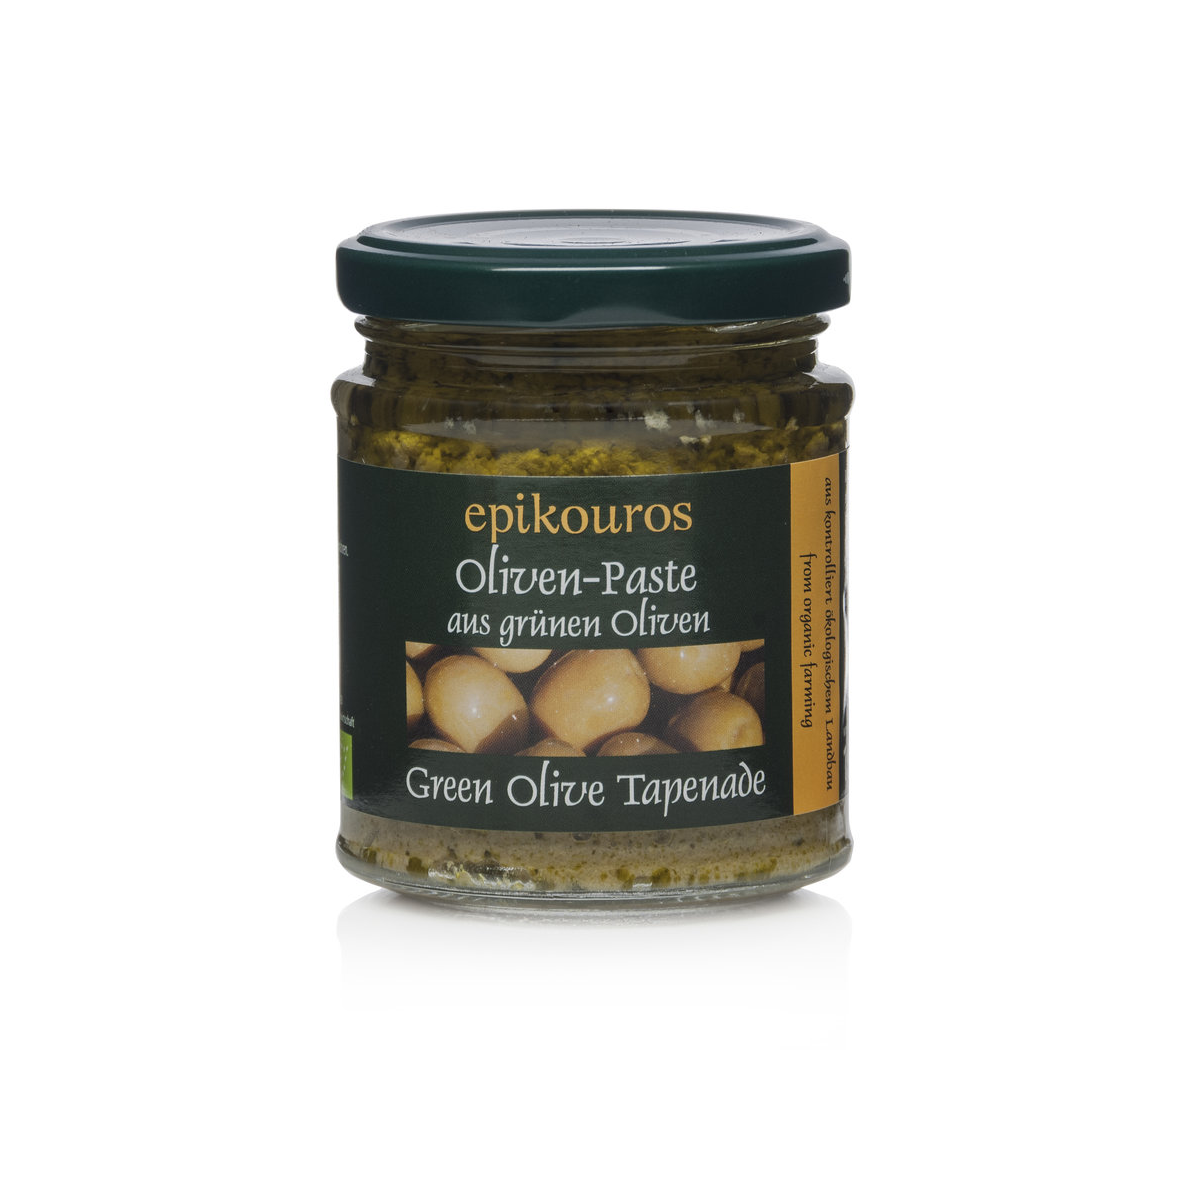 Griechische Oliven-Tapenade grün